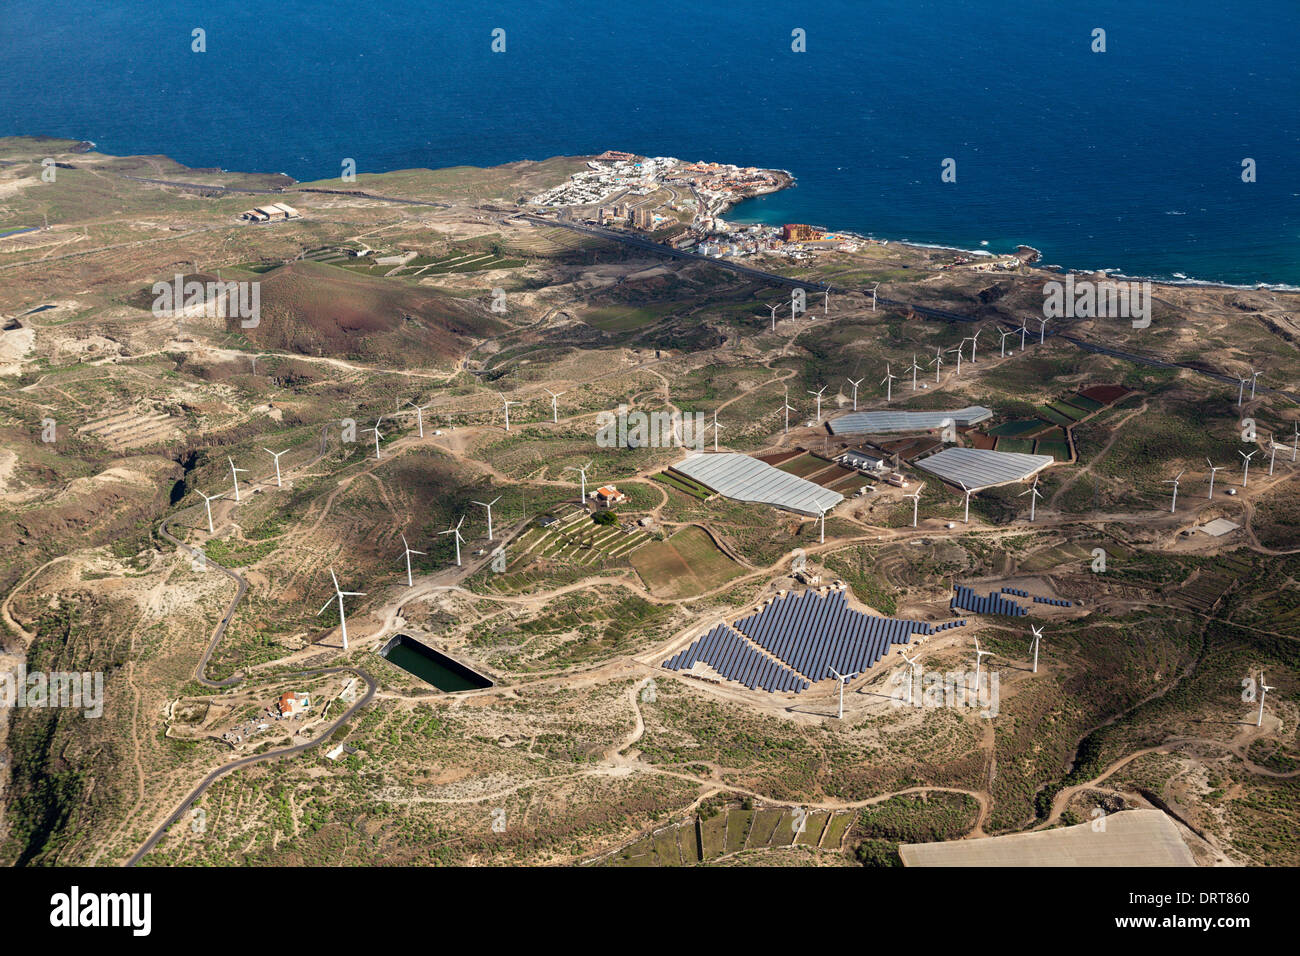 Vista aerea di collettori solari e wind power station, Tenerife, Spagna Foto Stock